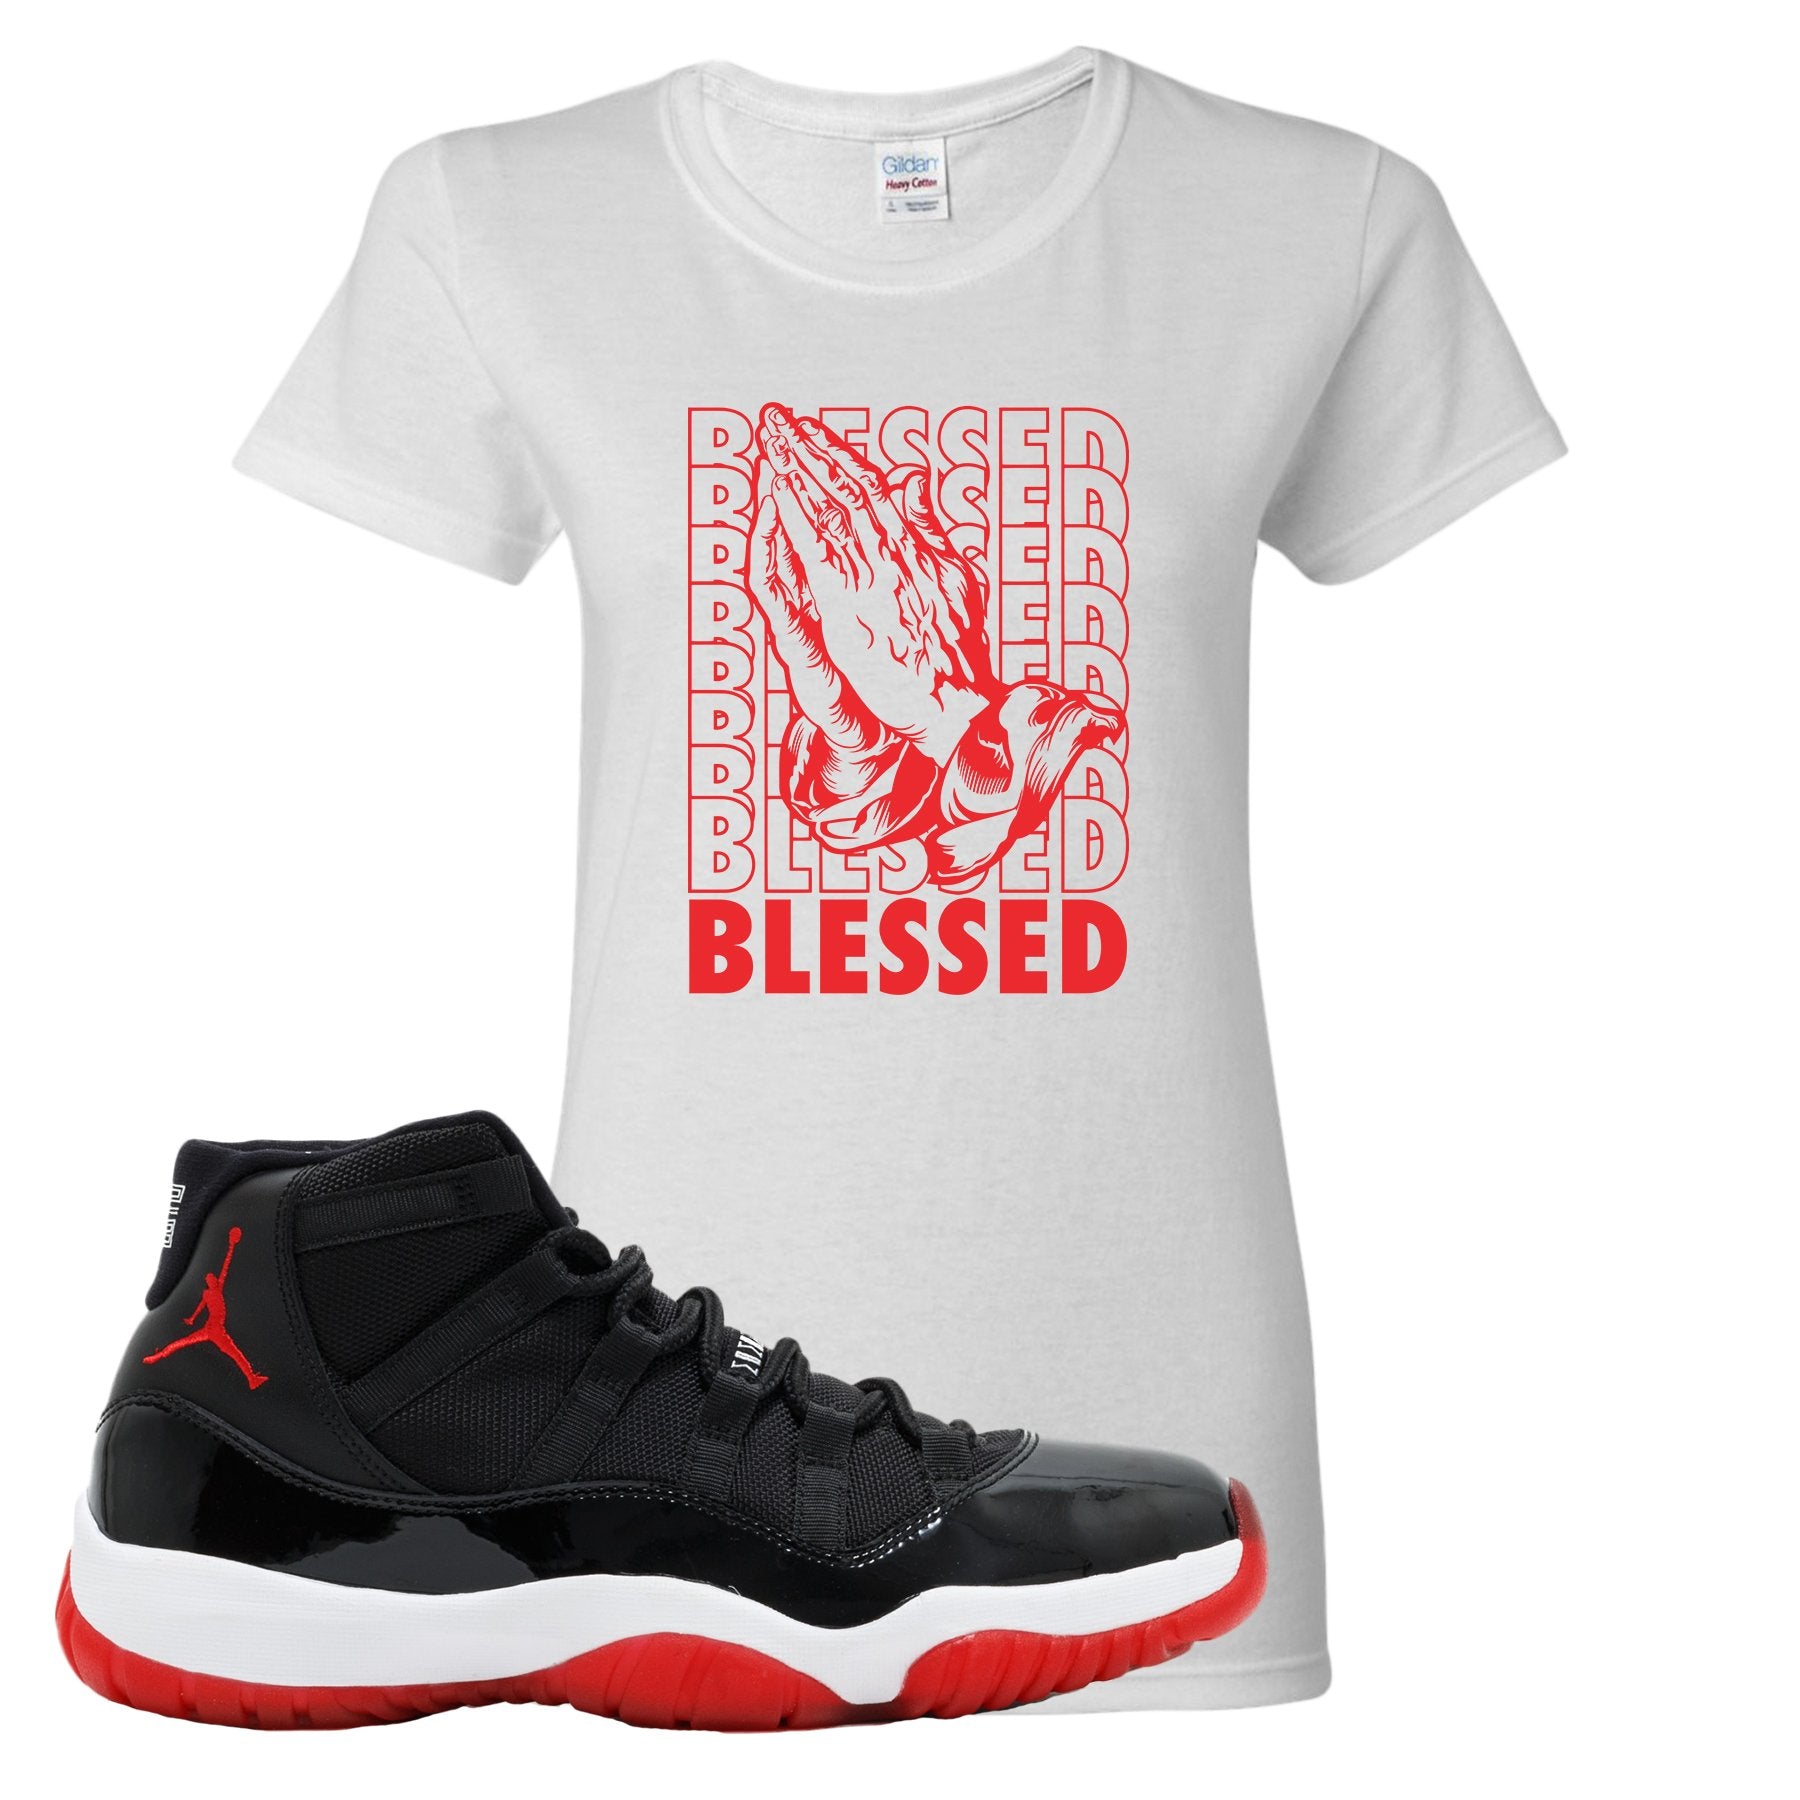 Jordan 11 Bred Blessed White Sneaker Hook Up Women's T-Shirt